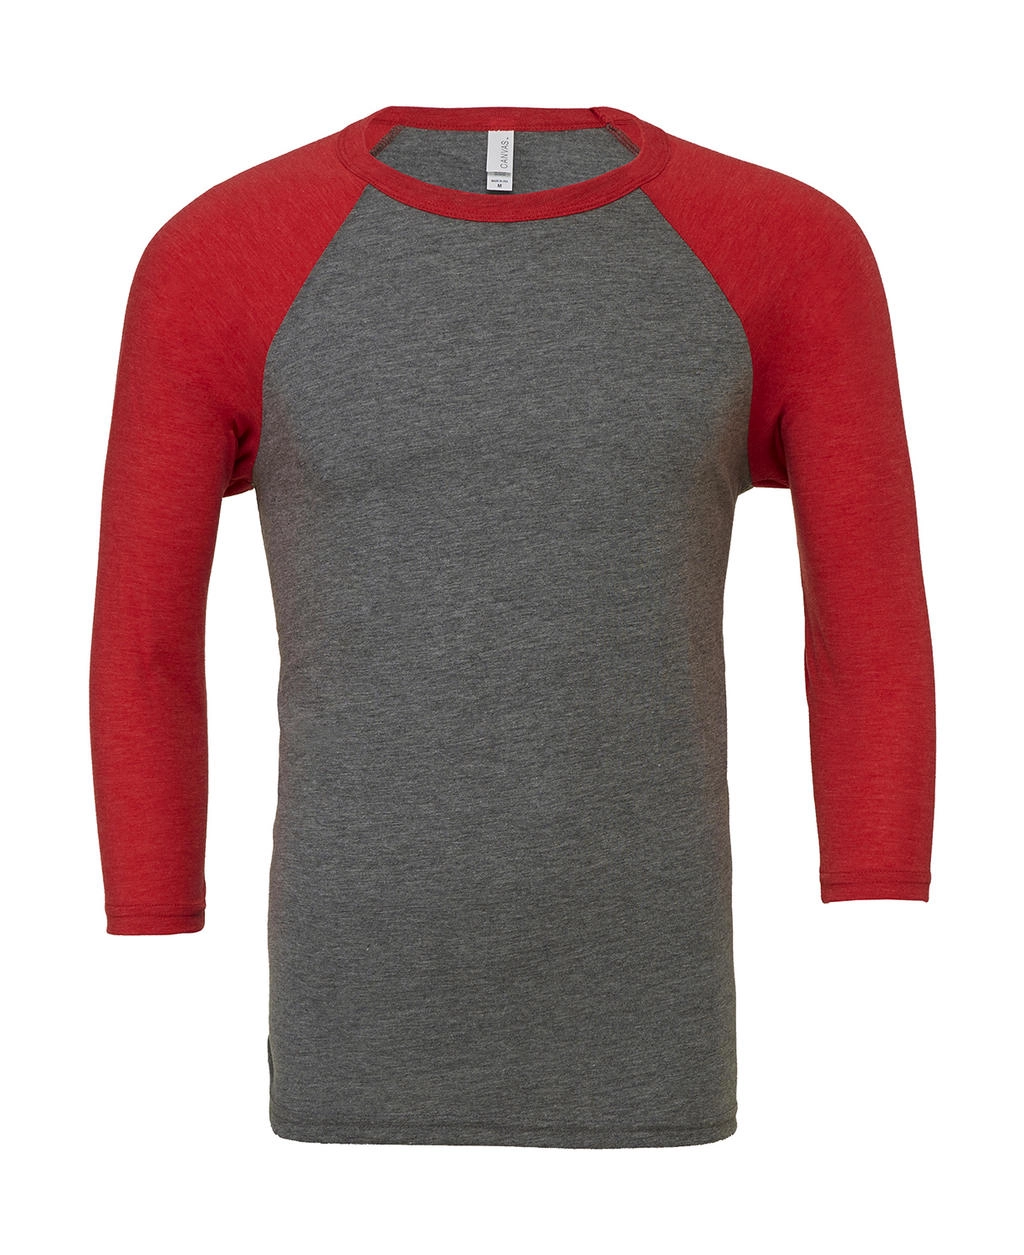 Unisex 3/4 Sleeve Baseball T-Shirt zum Besticken und Bedrucken in der Farbe Grey/Red Triblend mit Ihren Logo, Schriftzug oder Motiv.